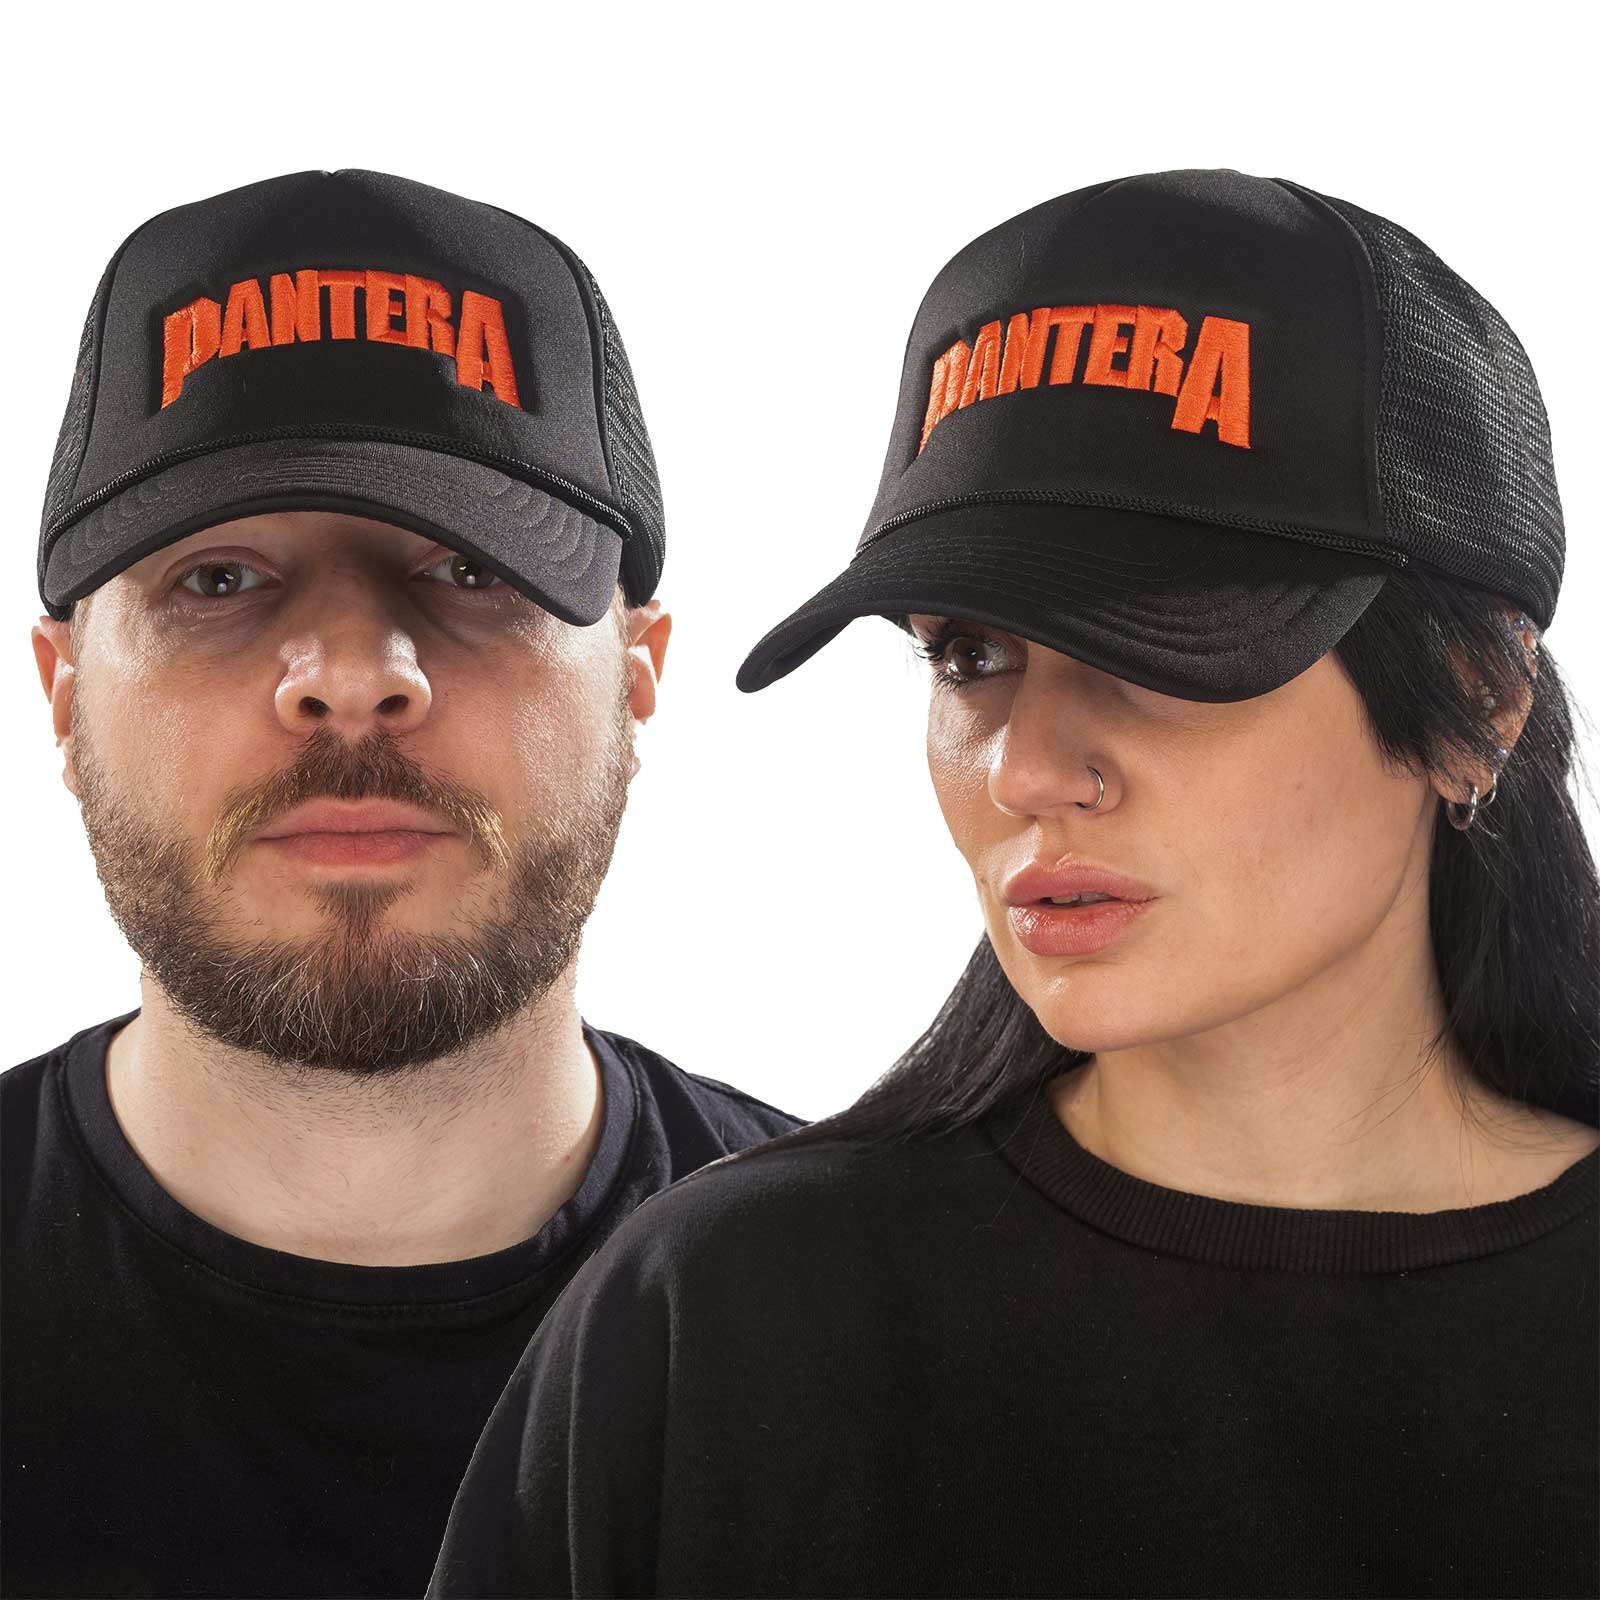 Panther Unisex Mesh Back Cap: Logo